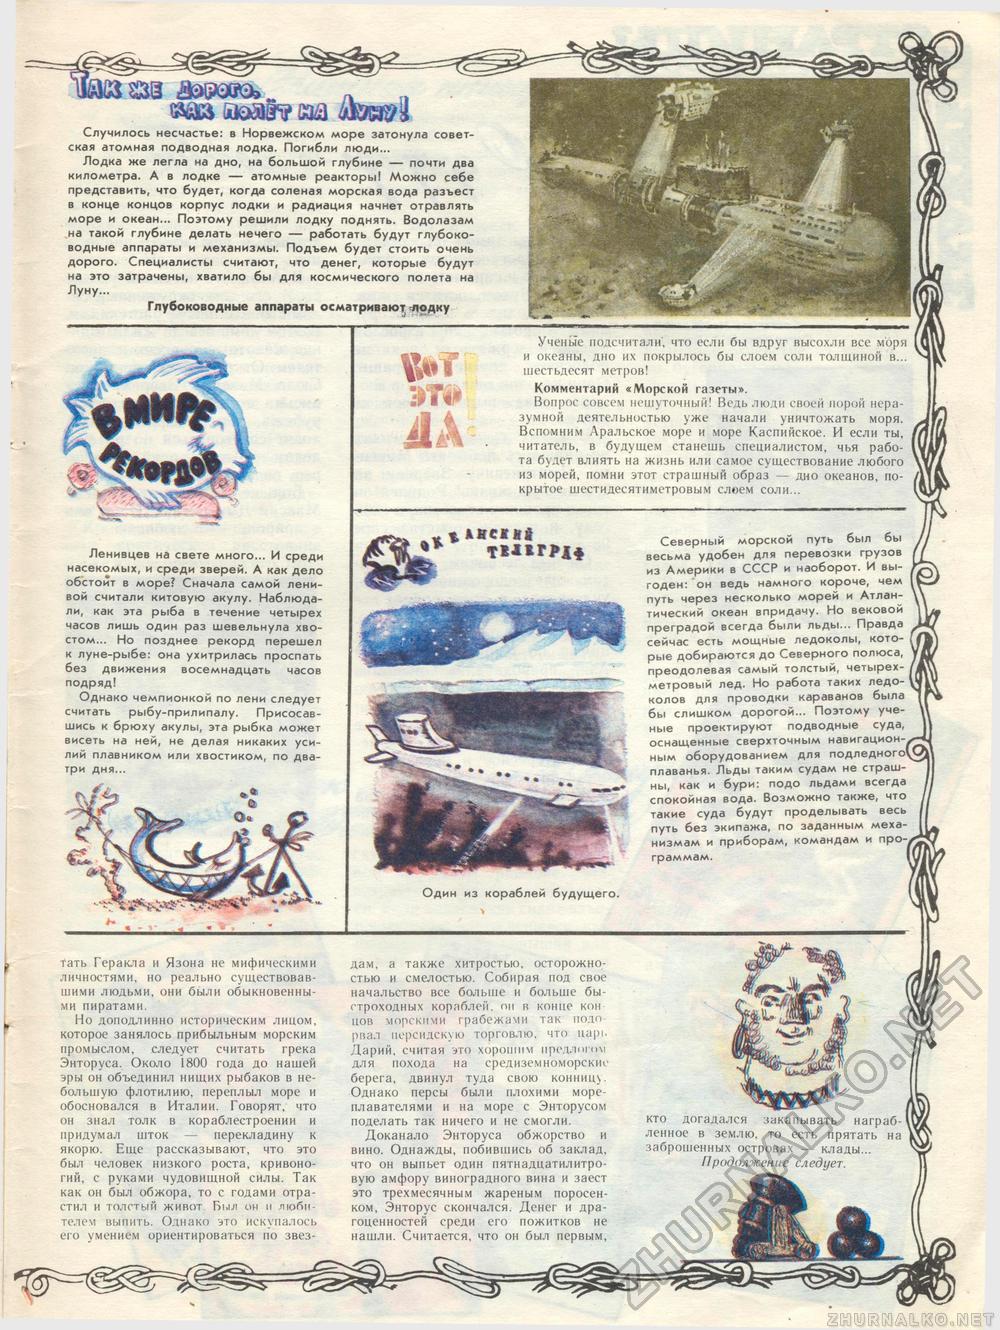  1992-01,  30